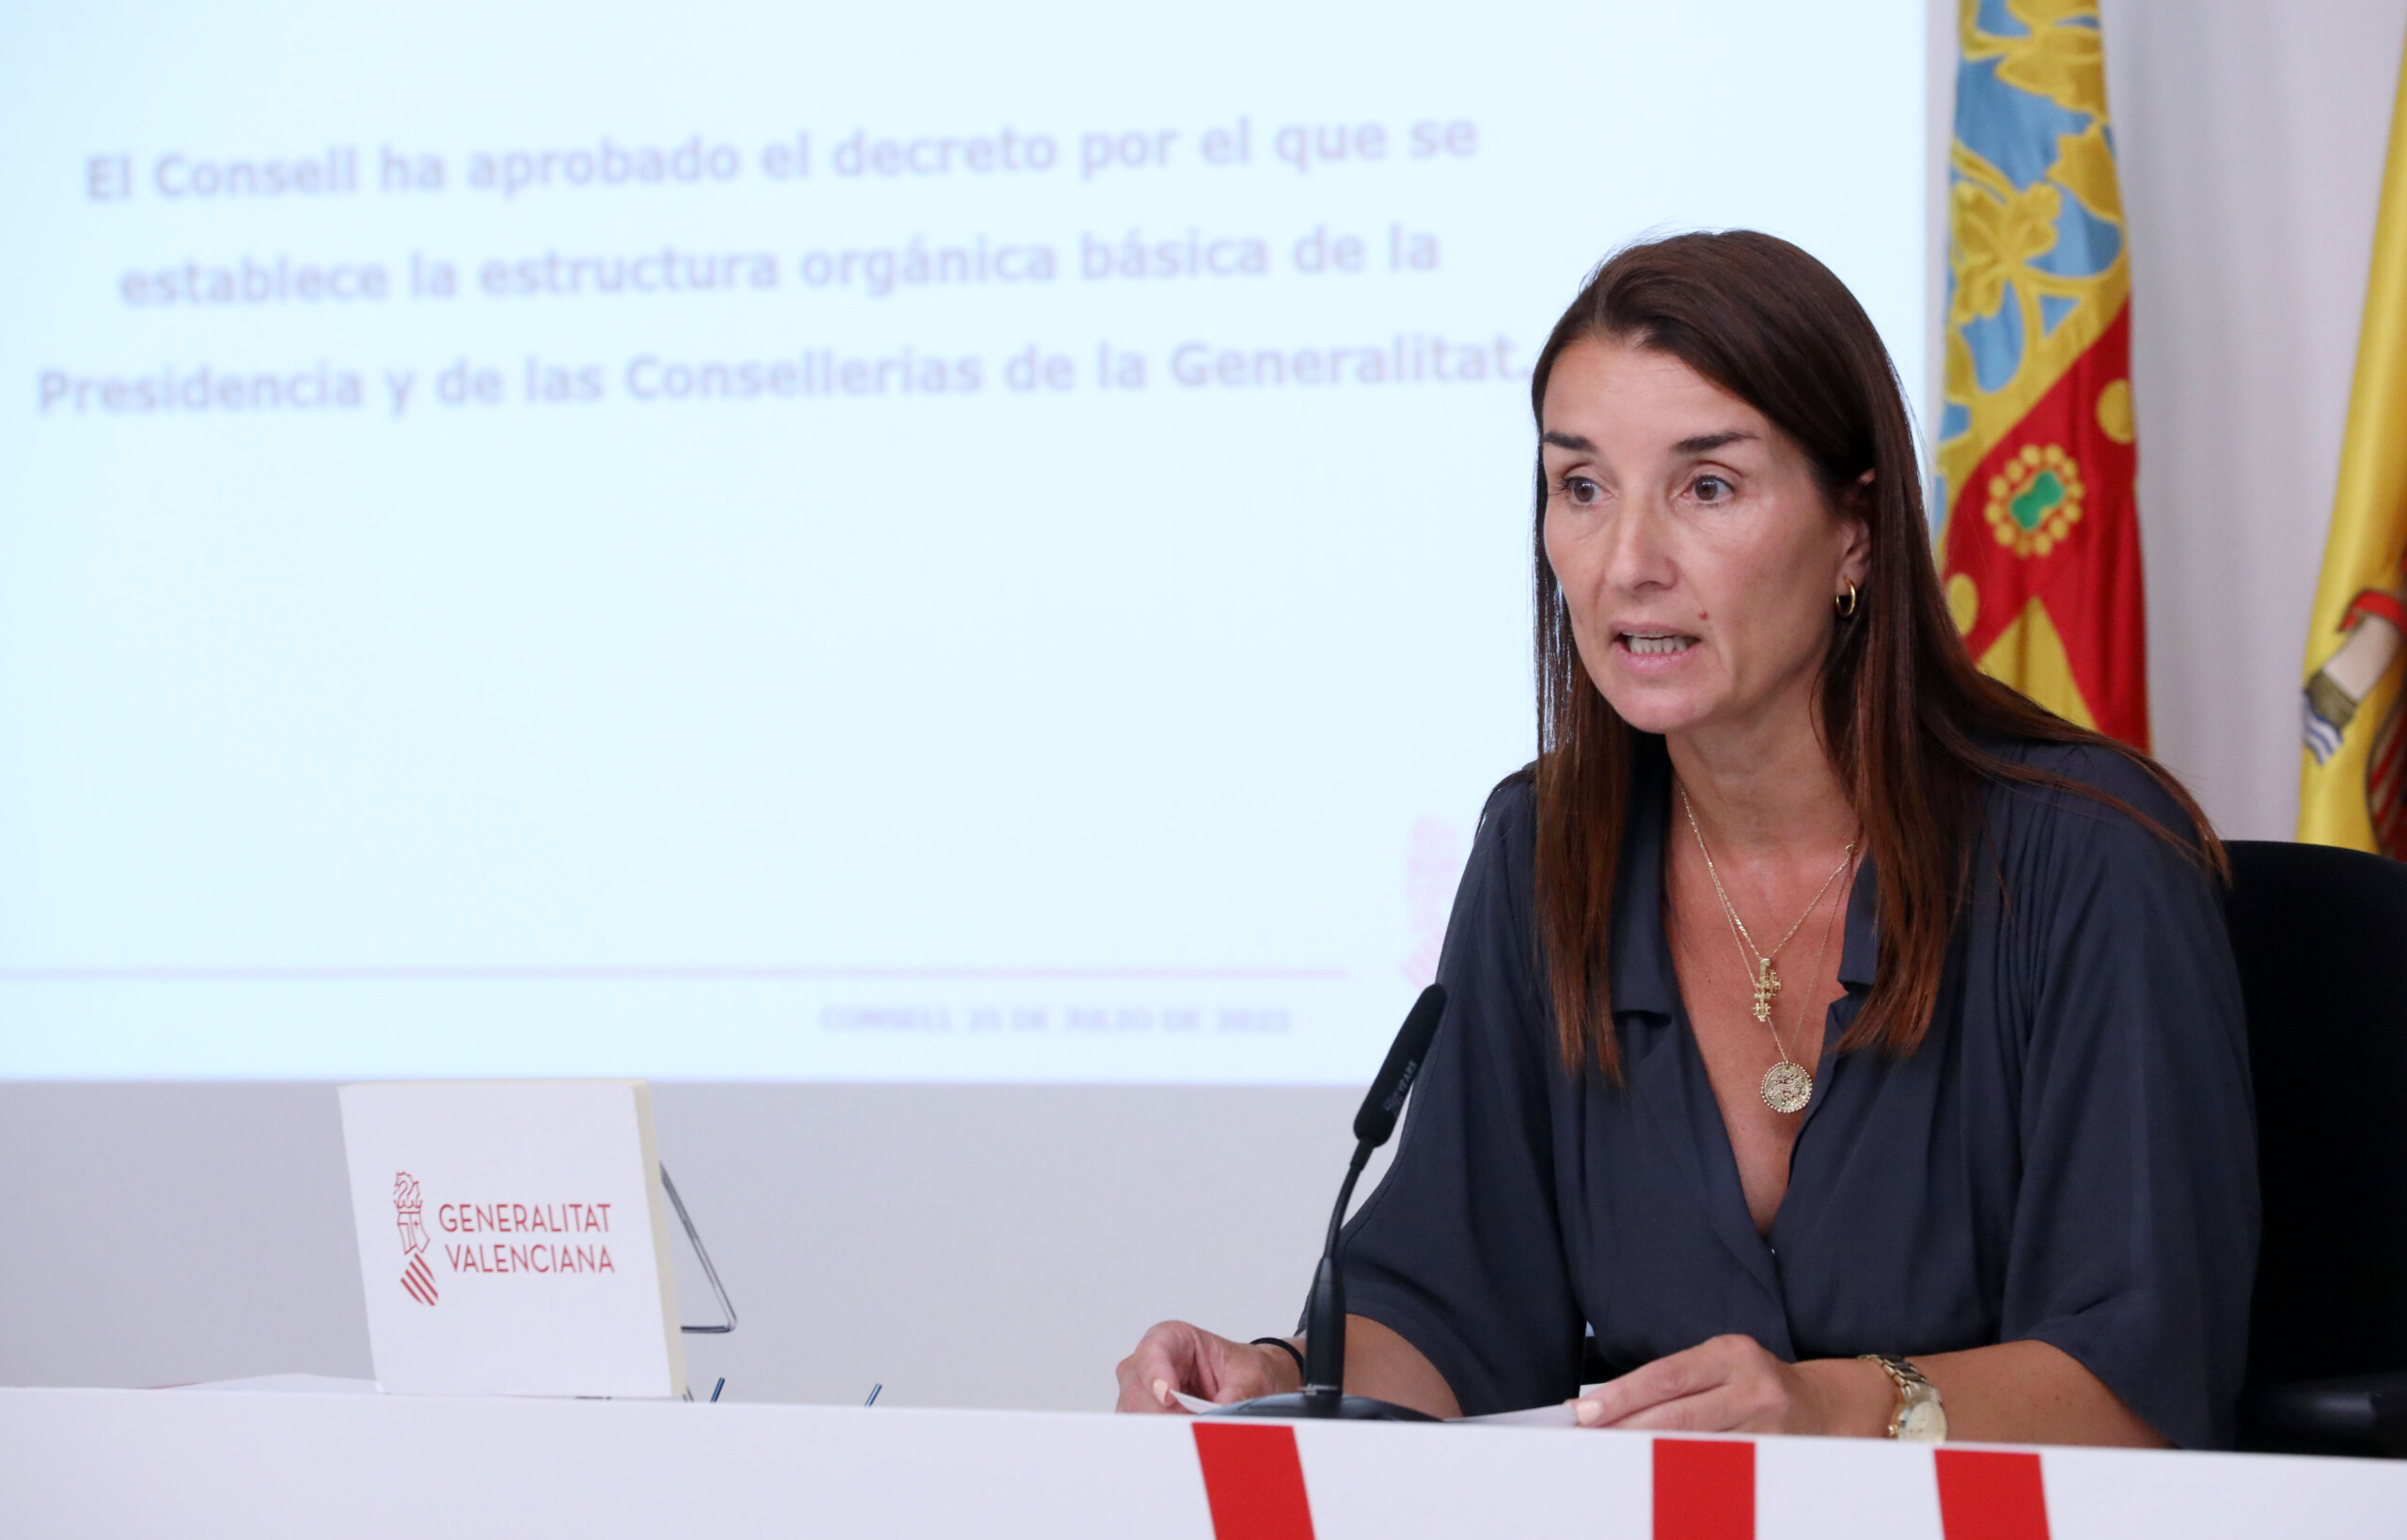 El Pleno del Consell aprueba la estructura orgánica básica del Gobierno Valenciano